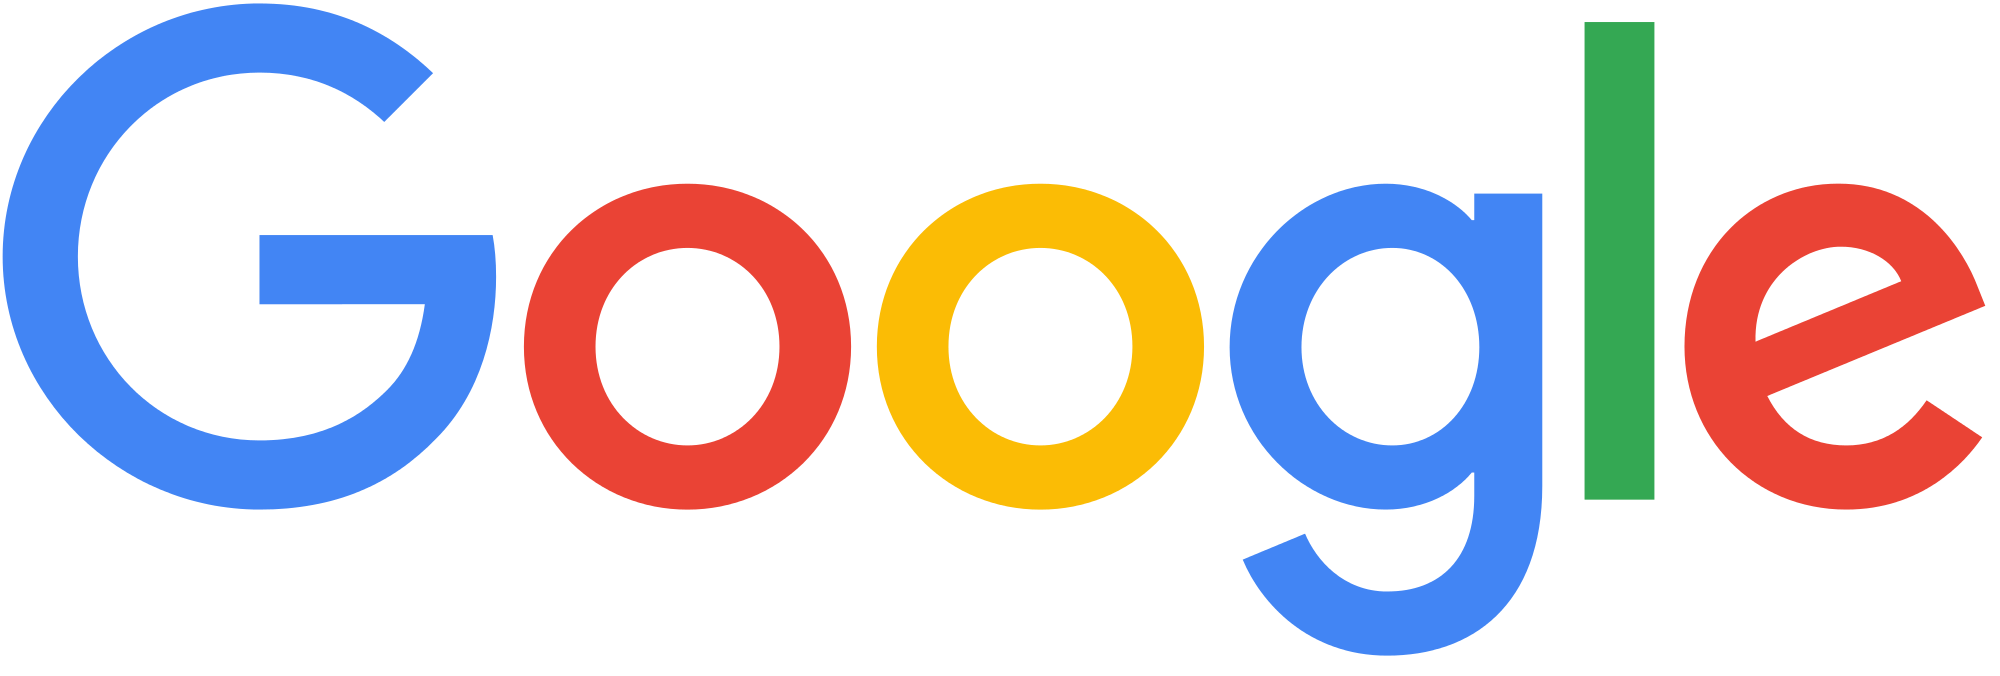 Google and Paula Zavala